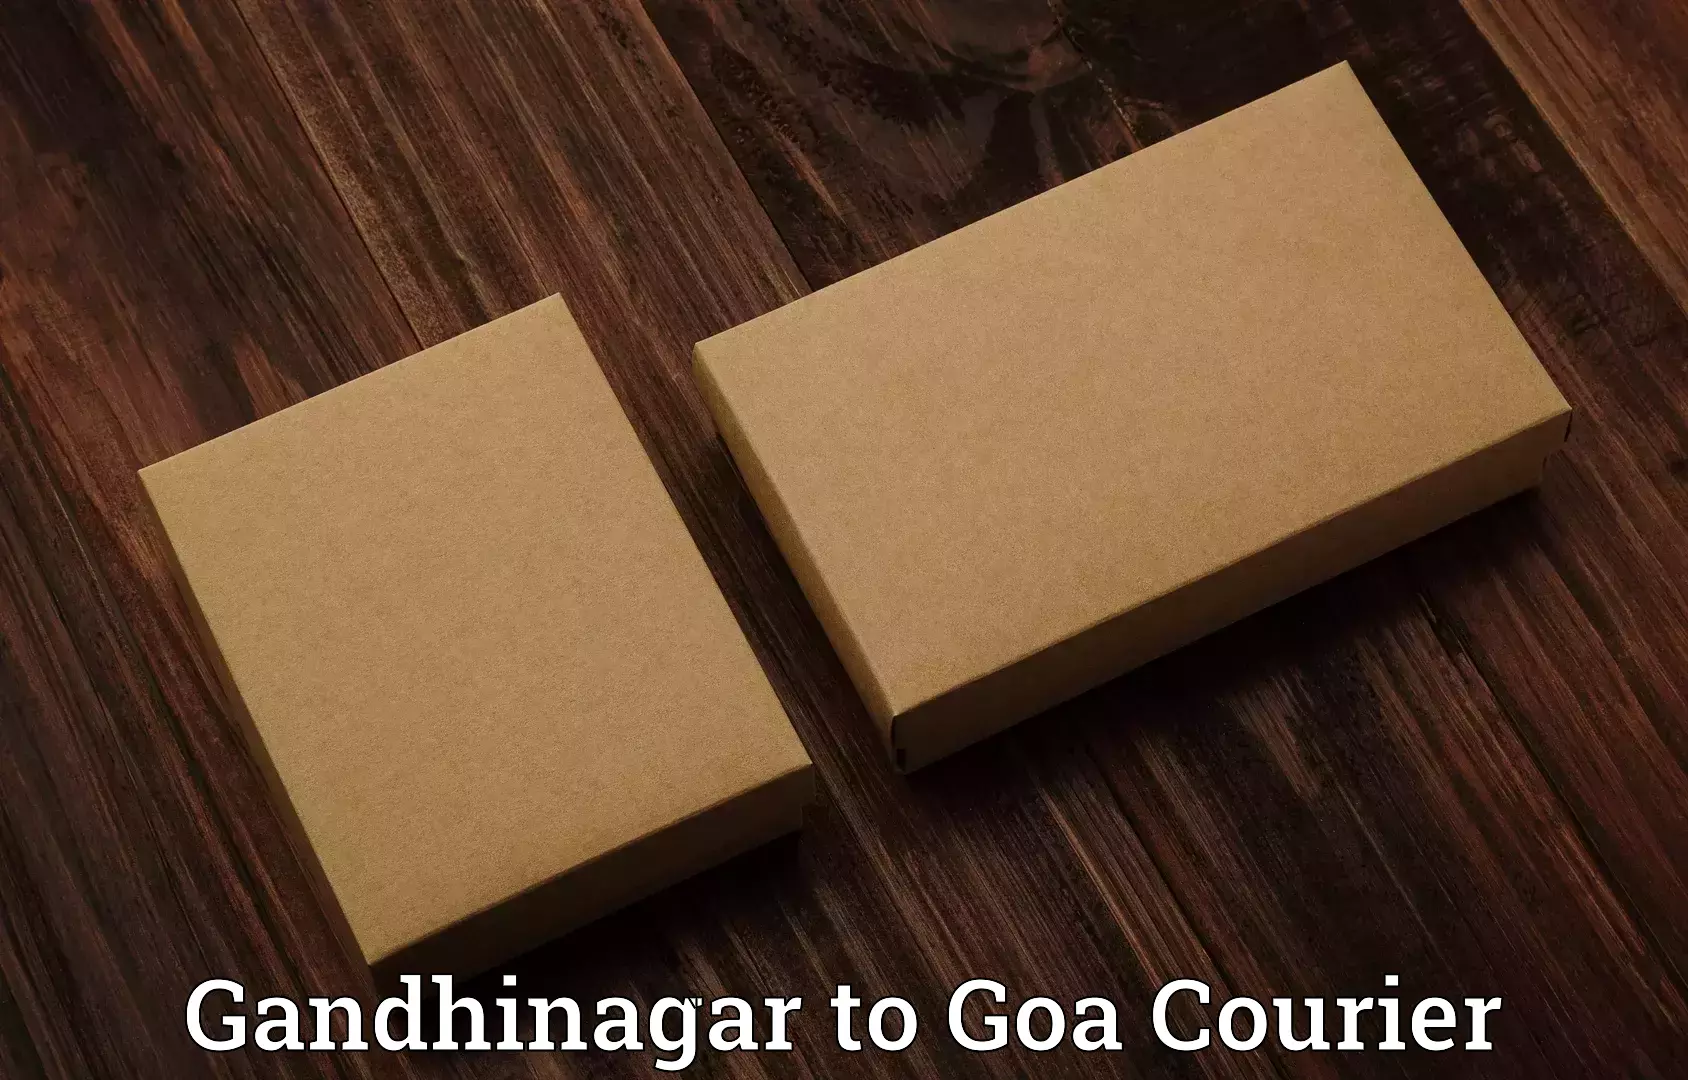 Instant baggage transport quote Gandhinagar to Goa